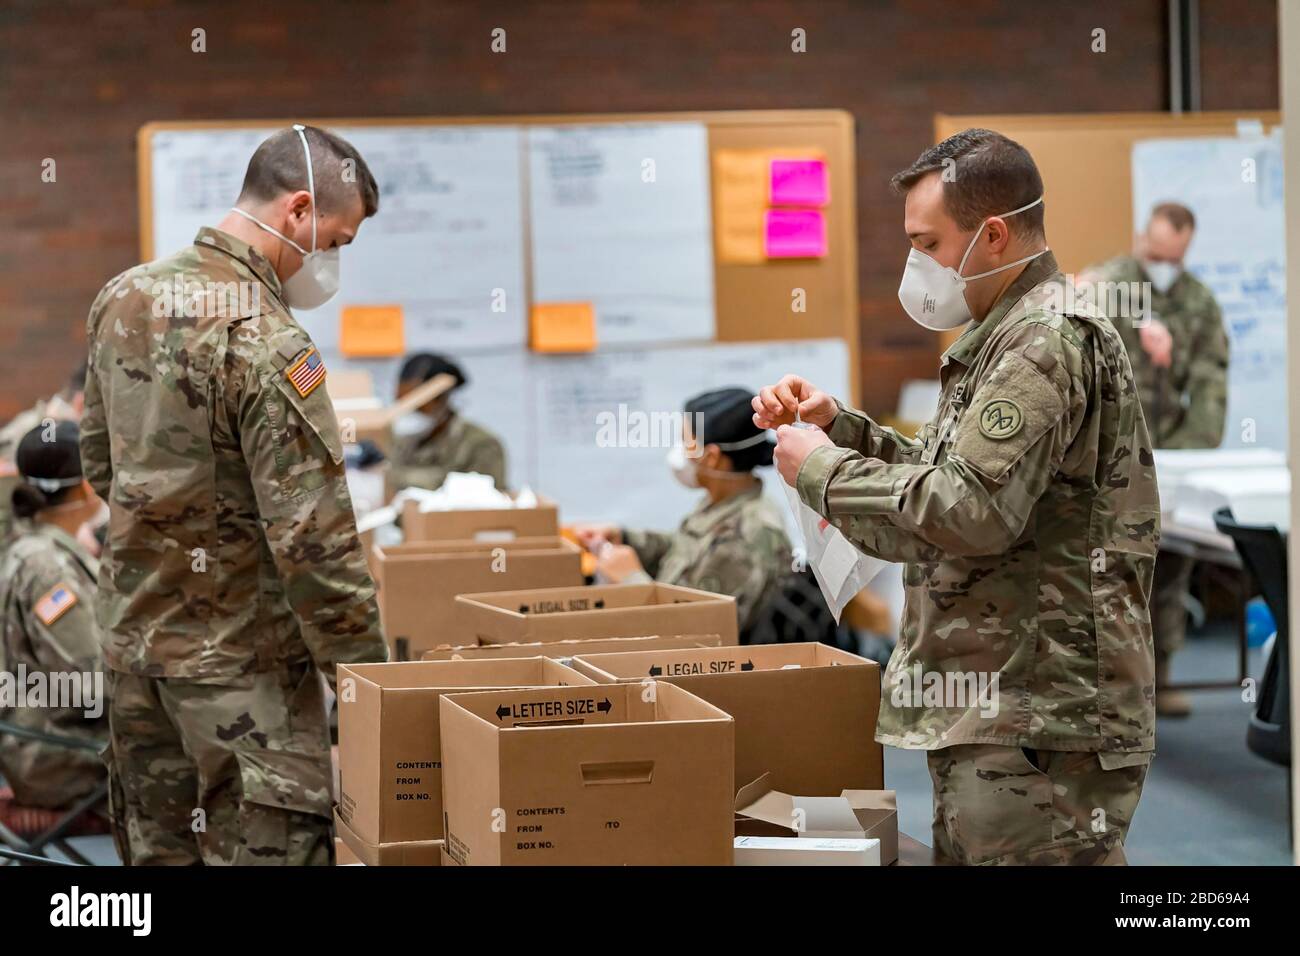 Les membres de la Garde nationale de l'Armée de New York assemblent de nouveaux kits d'essai de collecte de spécimens de coronavirus au State Department of Health Wadsworth Centre le 4 avril 2020 à Albany, en New York Banque D'Images